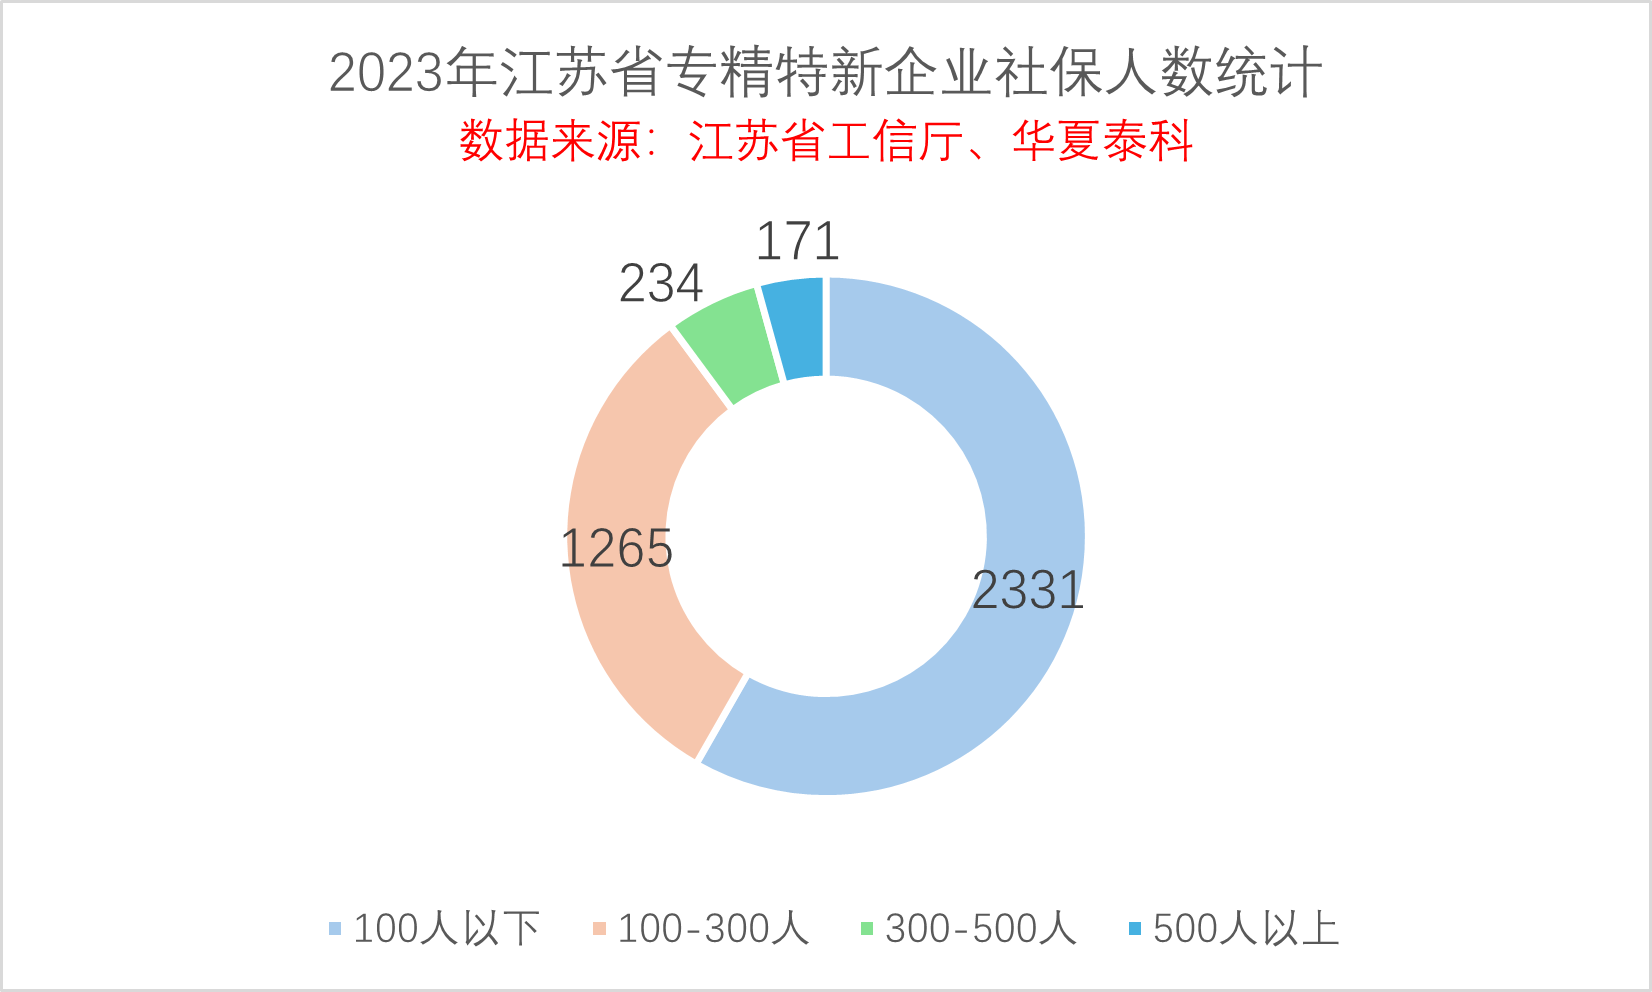 2023年江苏省专精特新企业数据分析